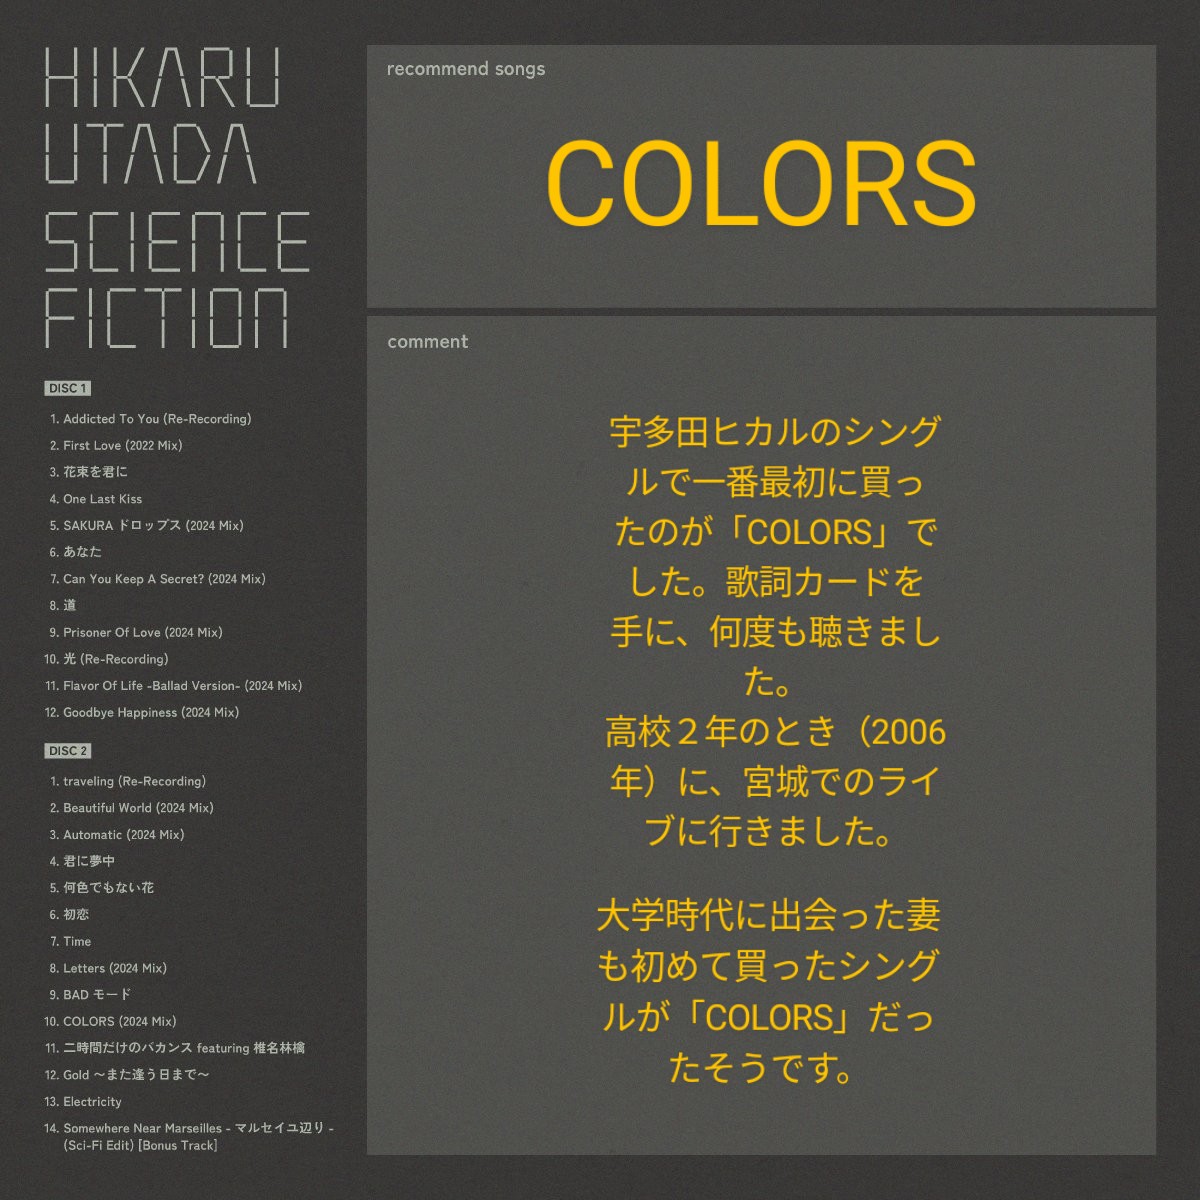 宇多田ヒカル「COLORS」
青春時代の一曲です。
#HikaruUtada25th